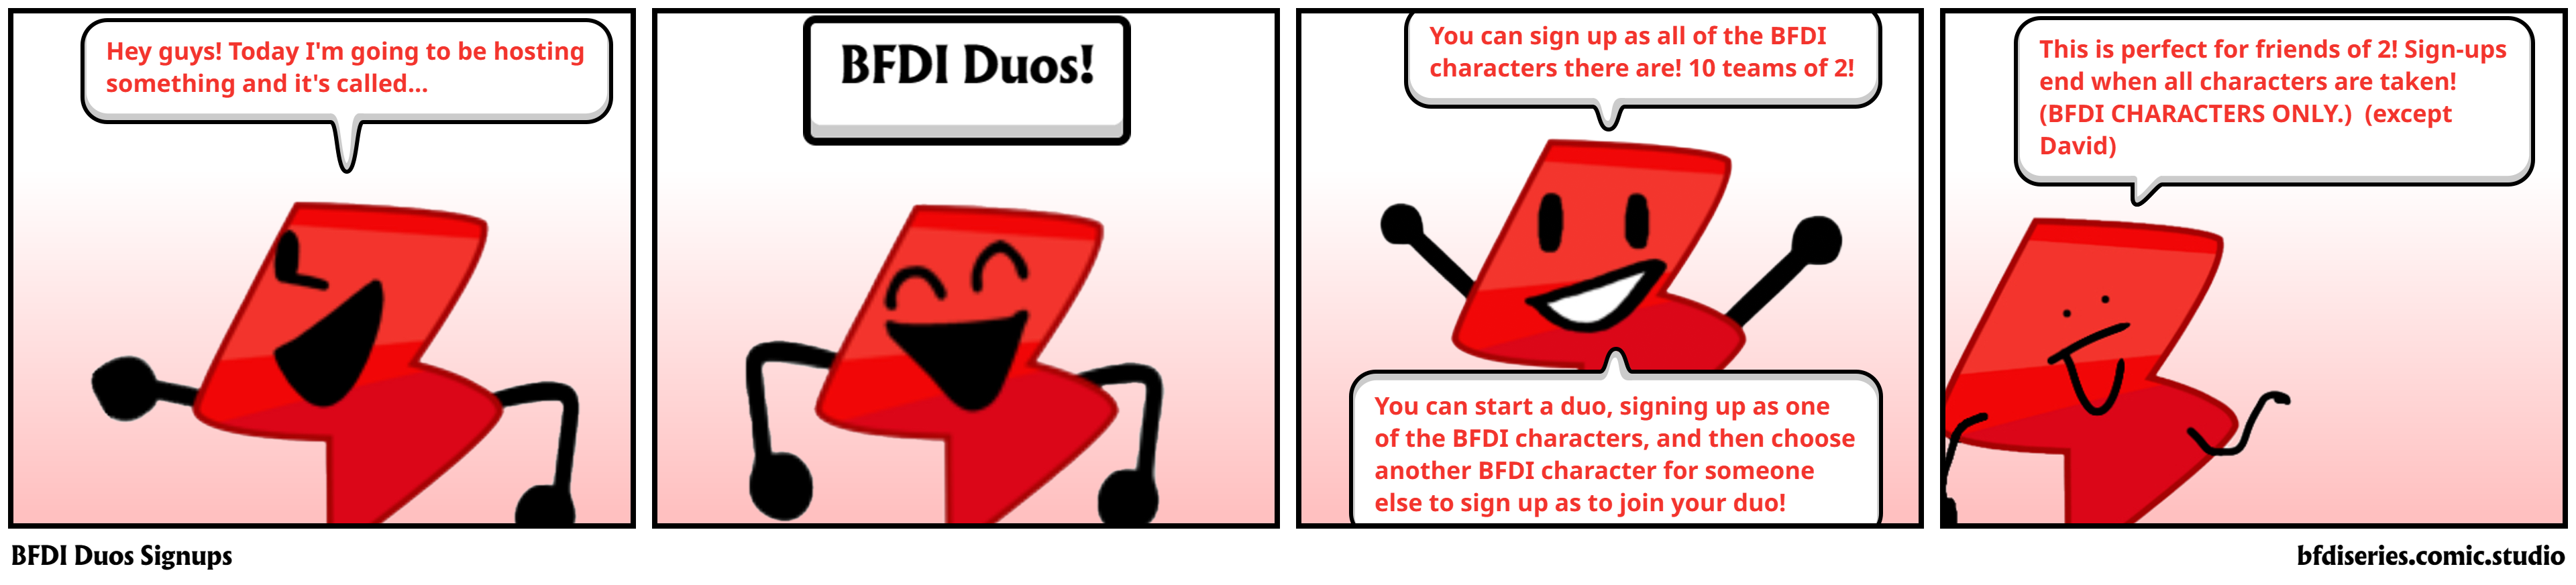 BFDI Duos Signups